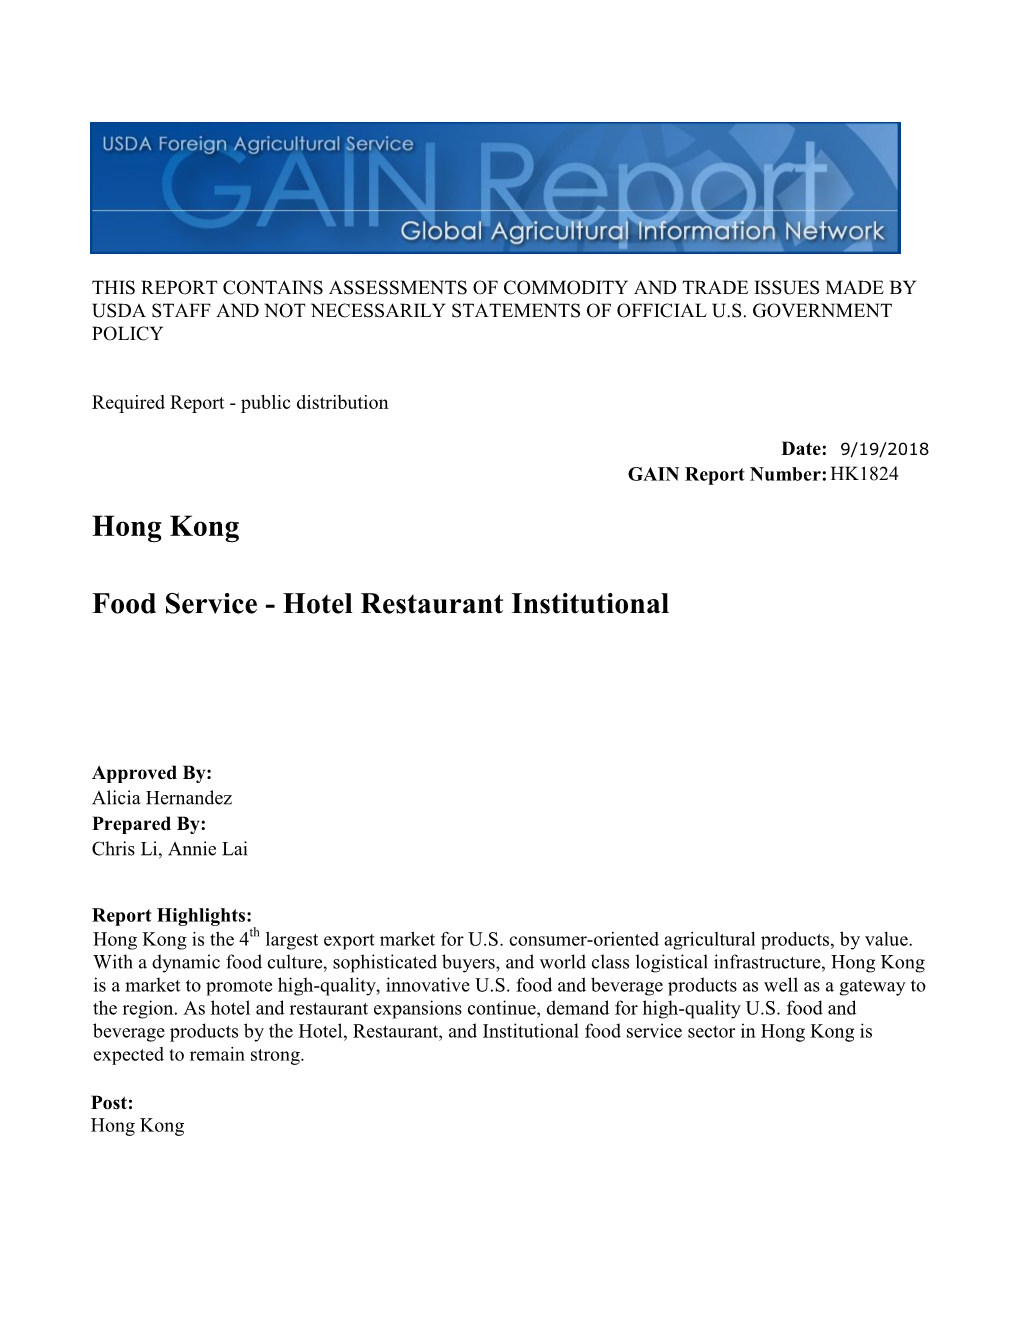 Hong Kong Food Service